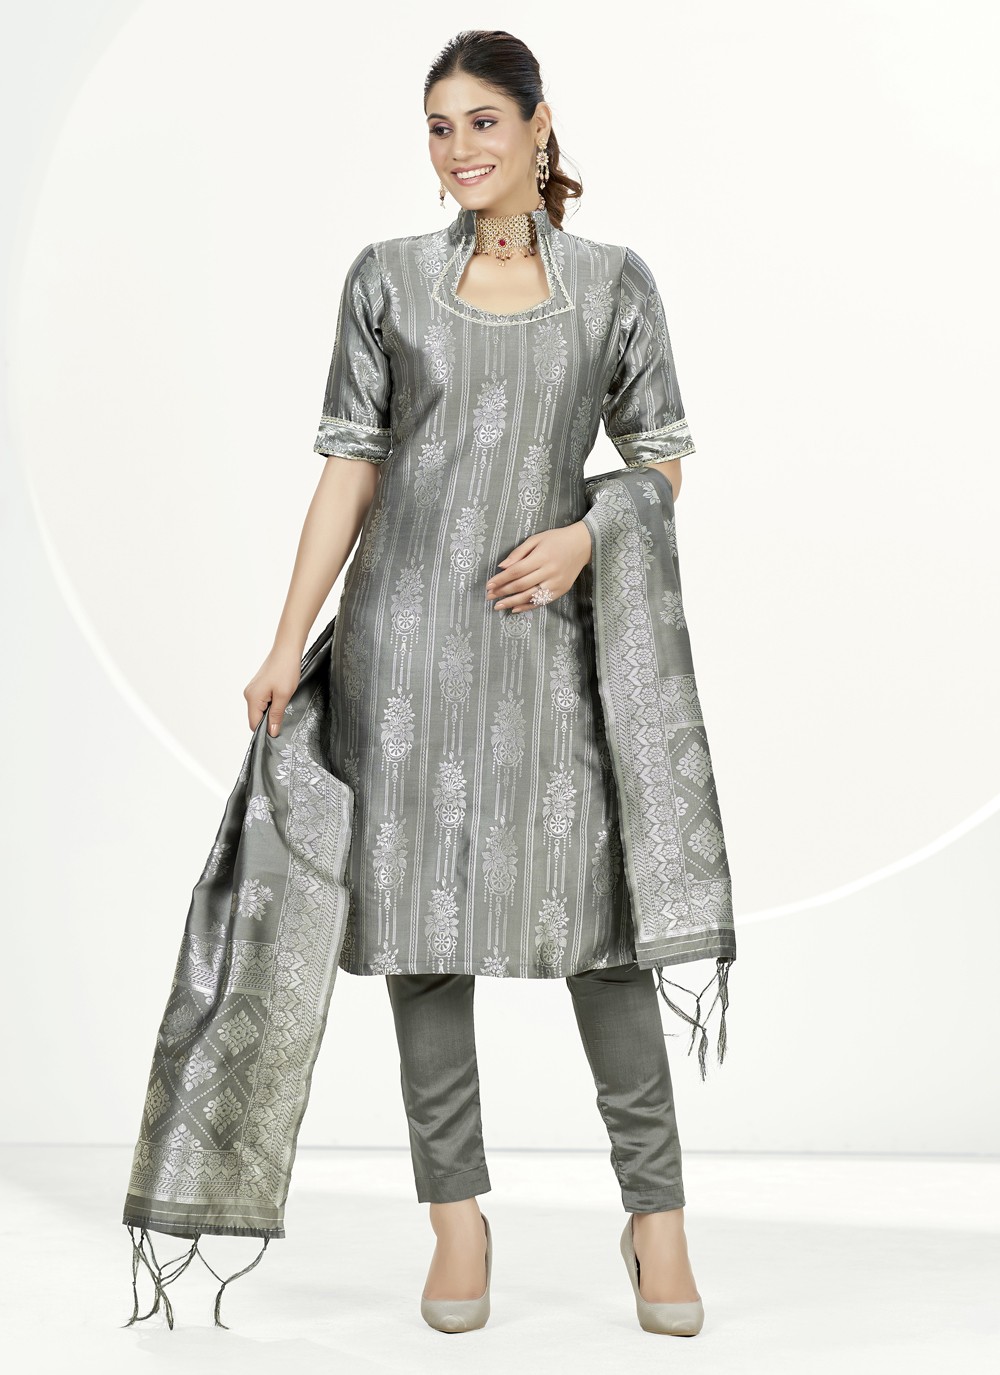 fcity.in - Pink Trendy Banarasi Jacquard Dress Material Suit For Women  Beautiful